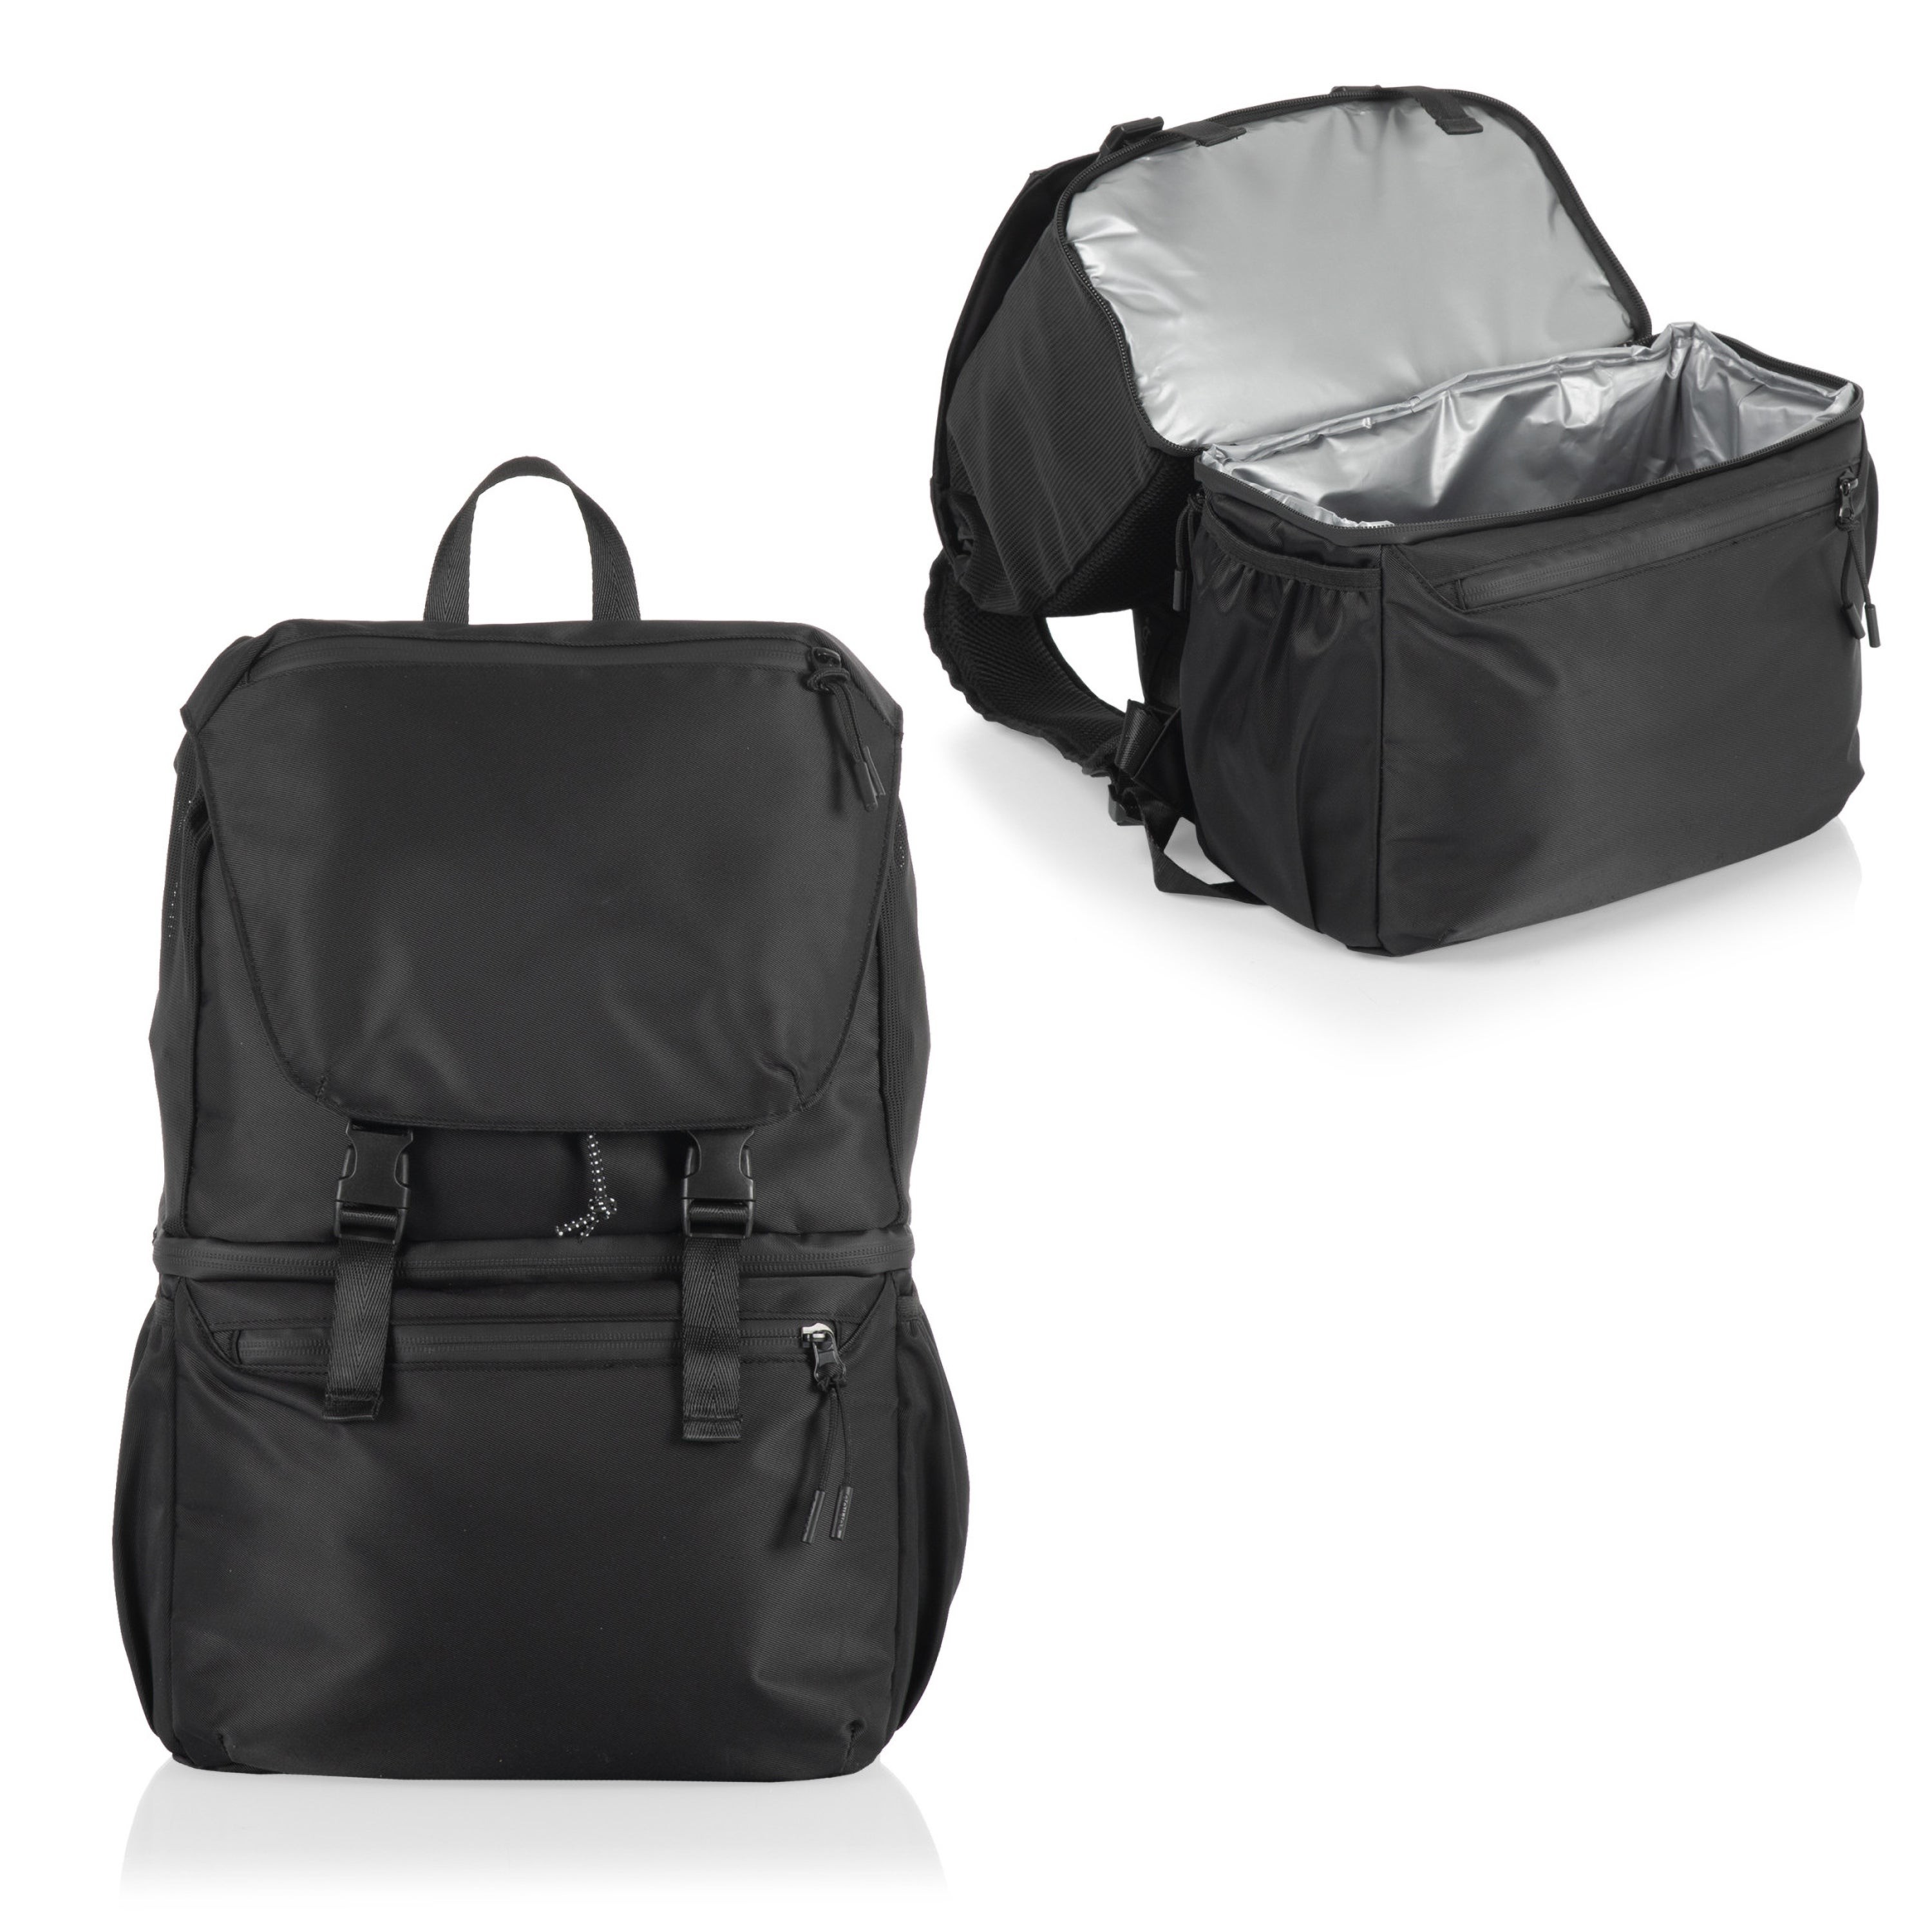 Tarana Backpack Cooler Carbon Black